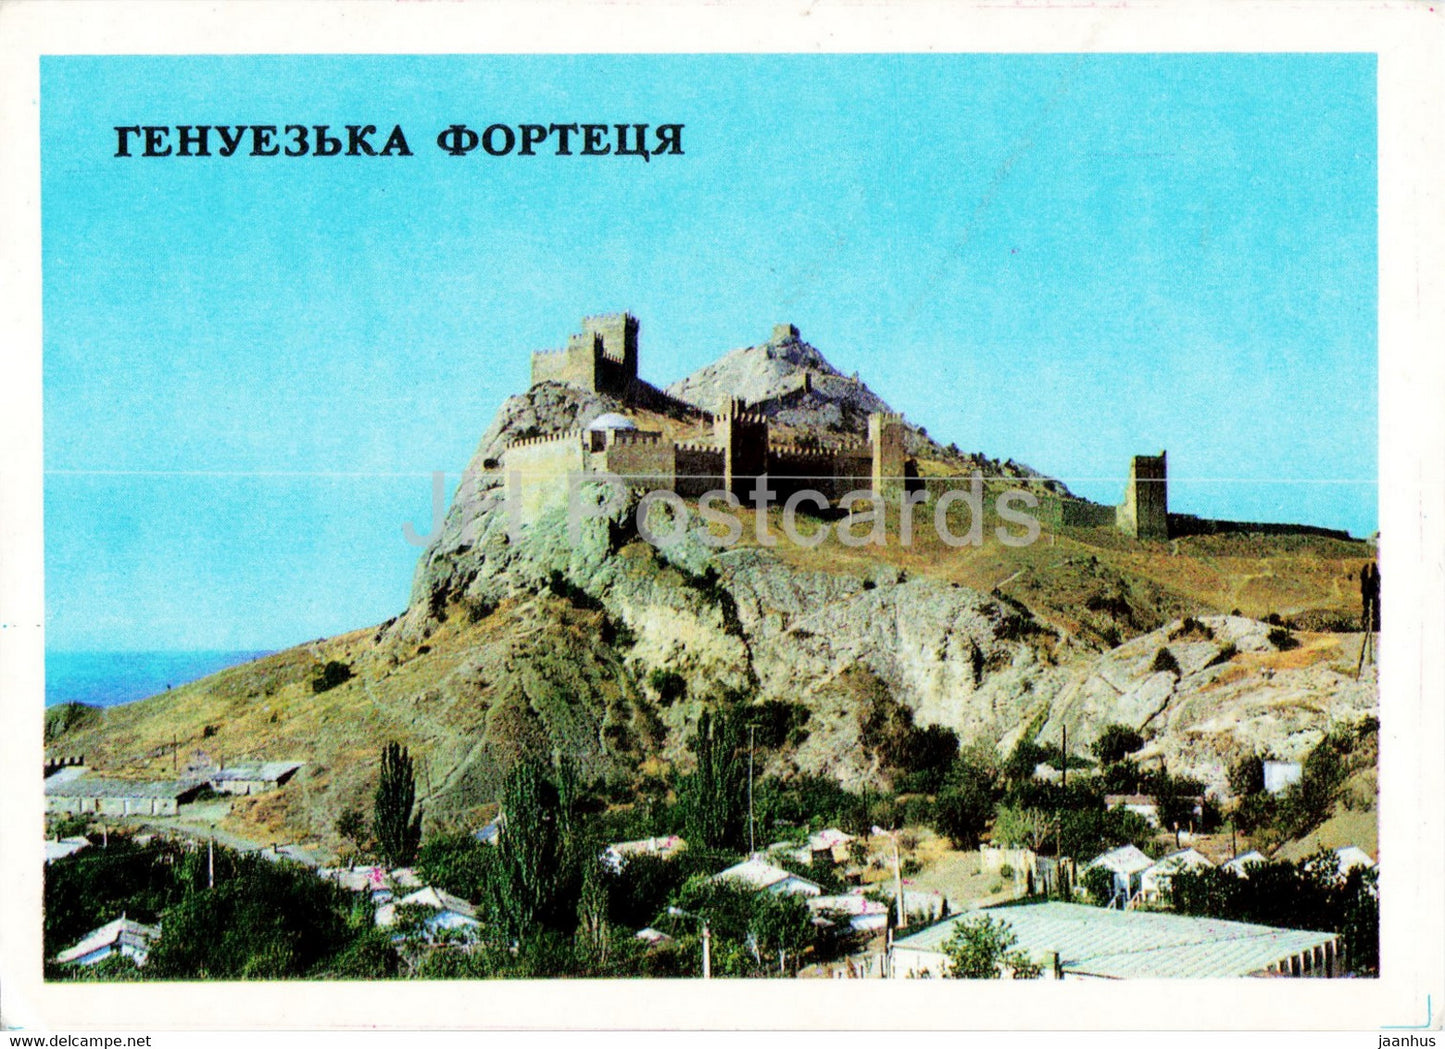 Sudak - Crimea - Genoese fortress - 1977 - Ukraine USSR - unused - JH Postcards